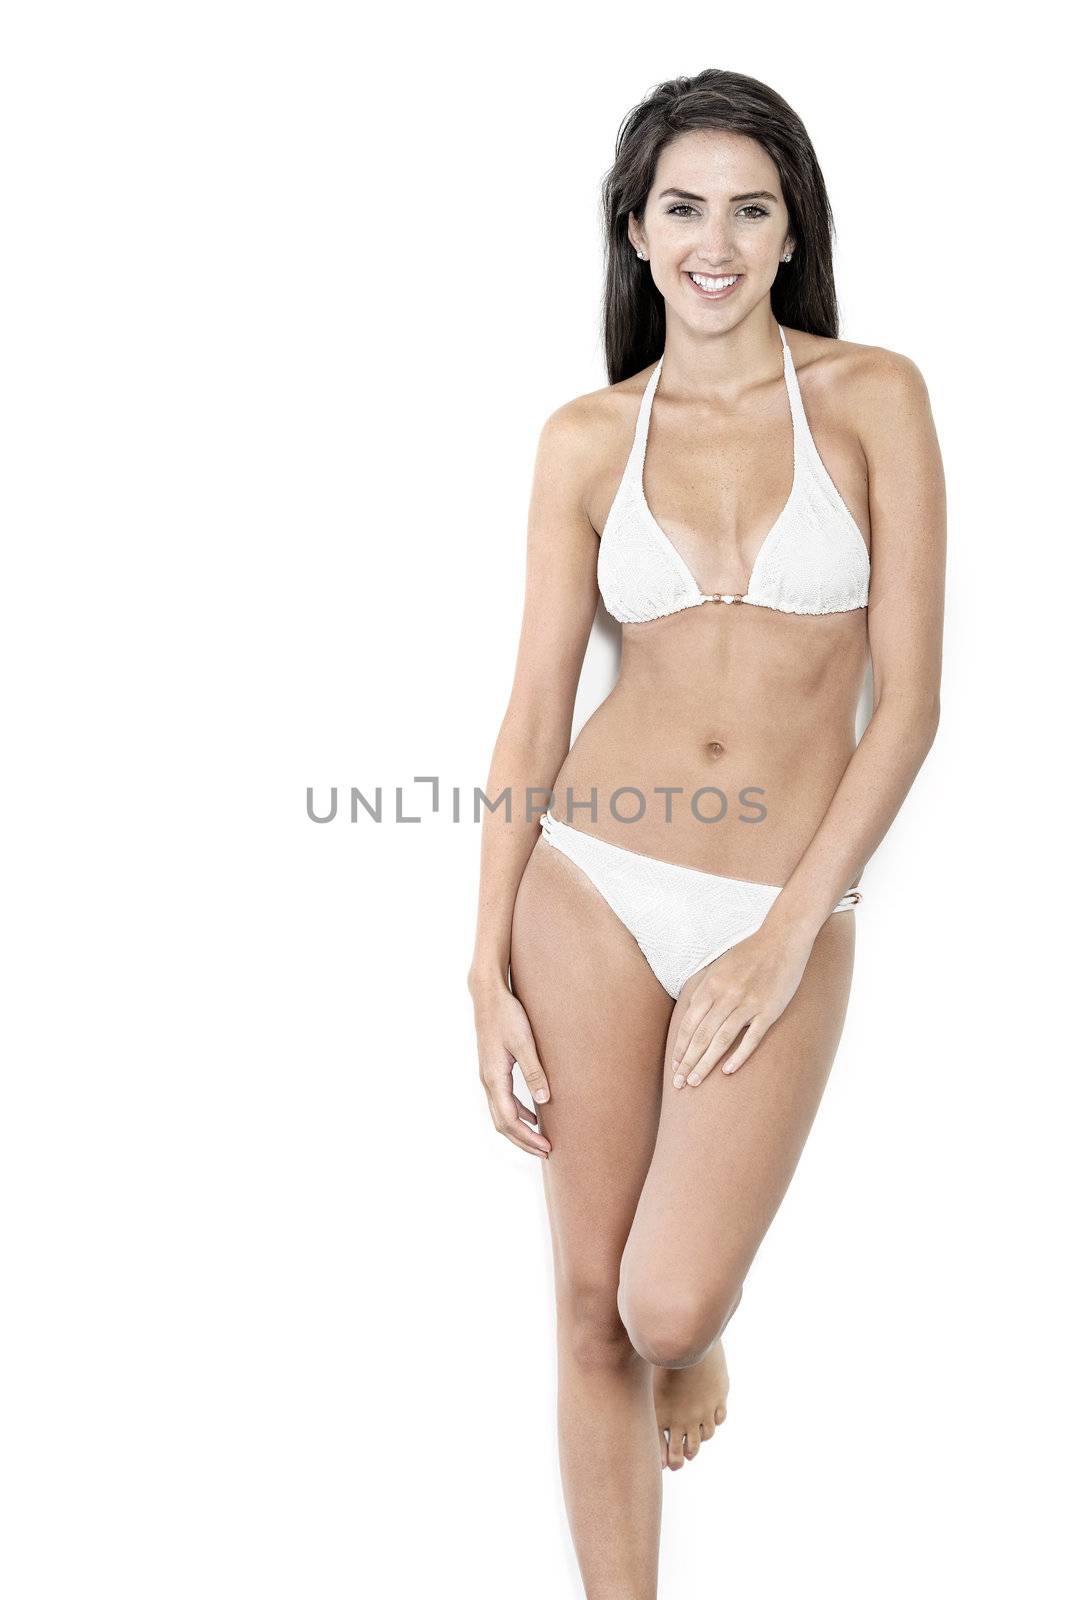 Beautiful sexy woman in white bikini smiling and cheerful